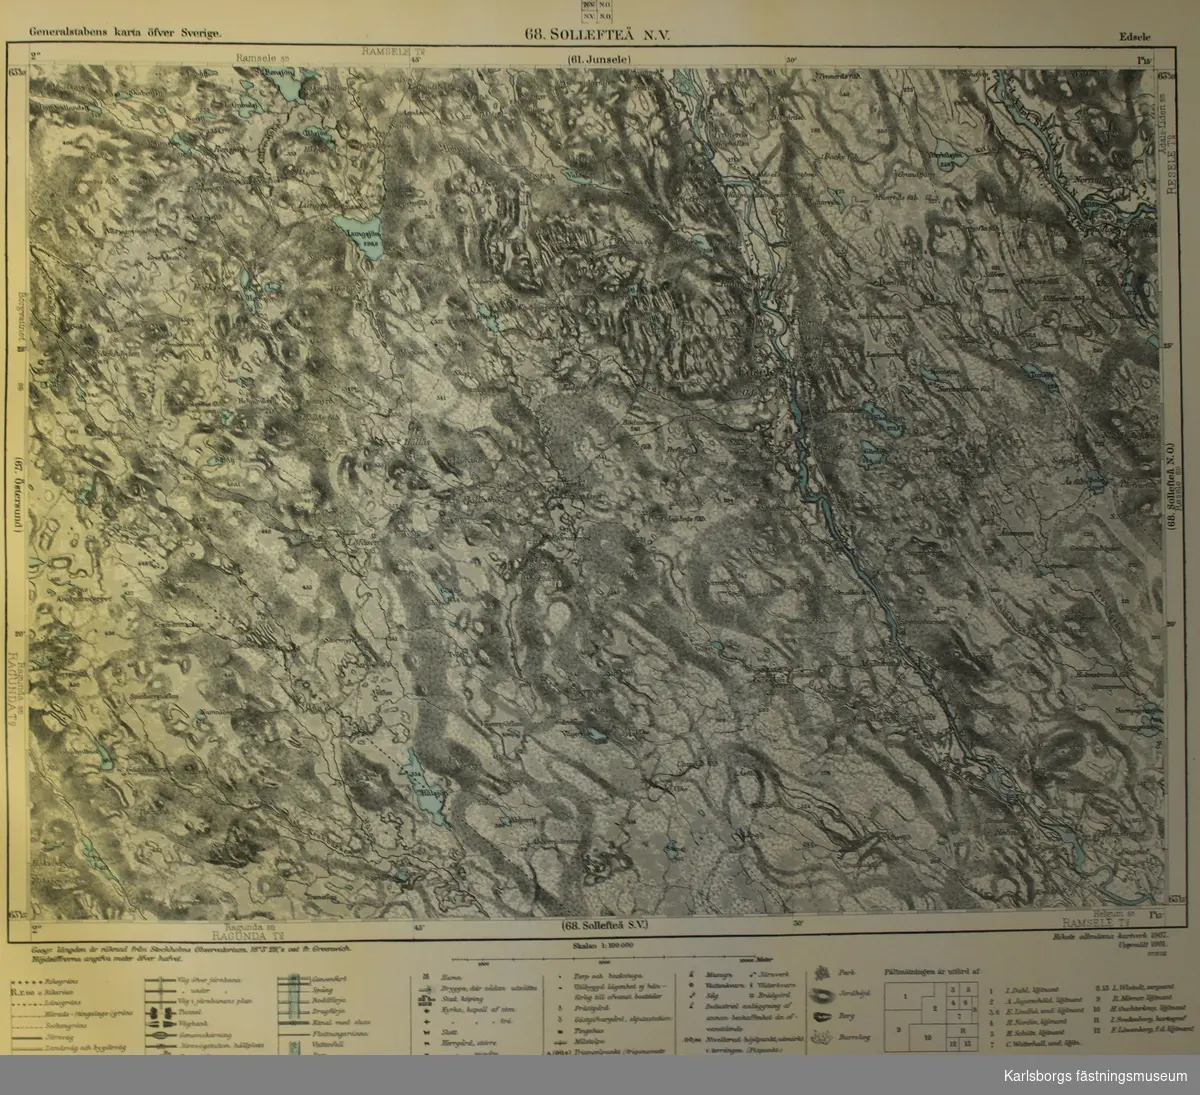 Generalstabens karta över Sverige (pärm) Norra delen. 

Skala 1: 100 000